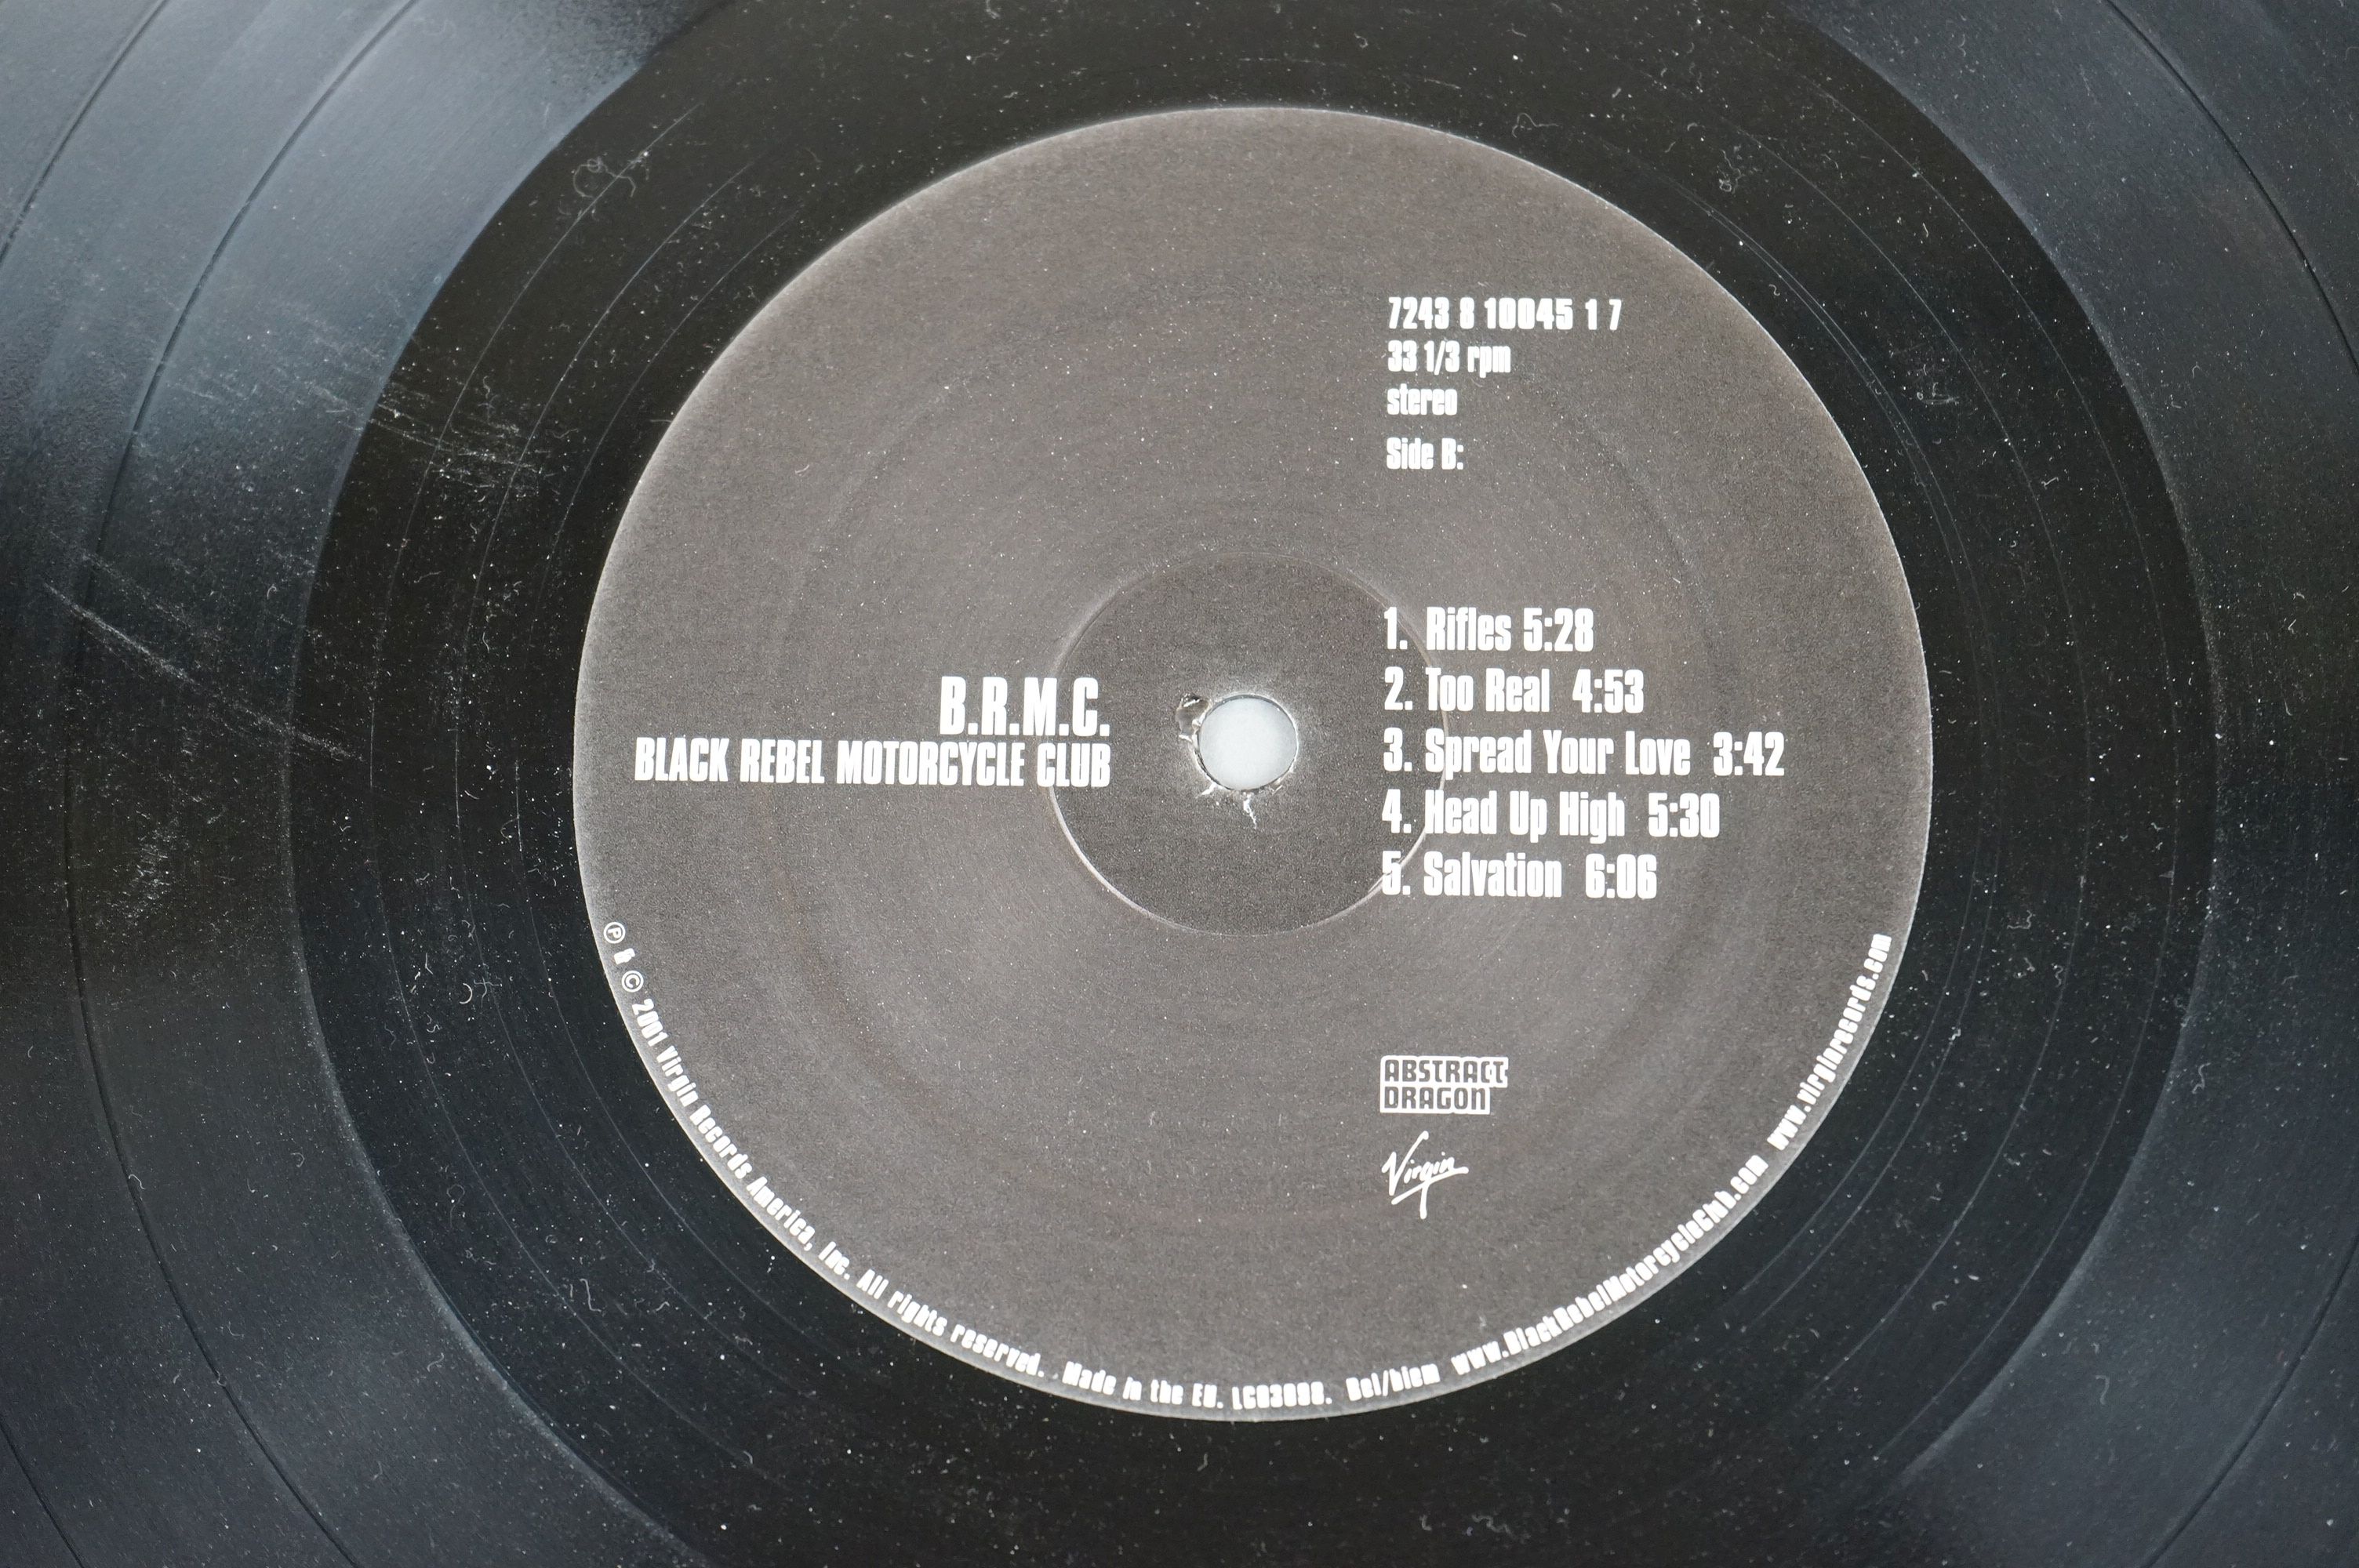 Vinyl - Black Rebel Motorcycle Club BRMC LP on Virgin VUSLP207 OM264, original HMV price sticker - Image 4 of 6